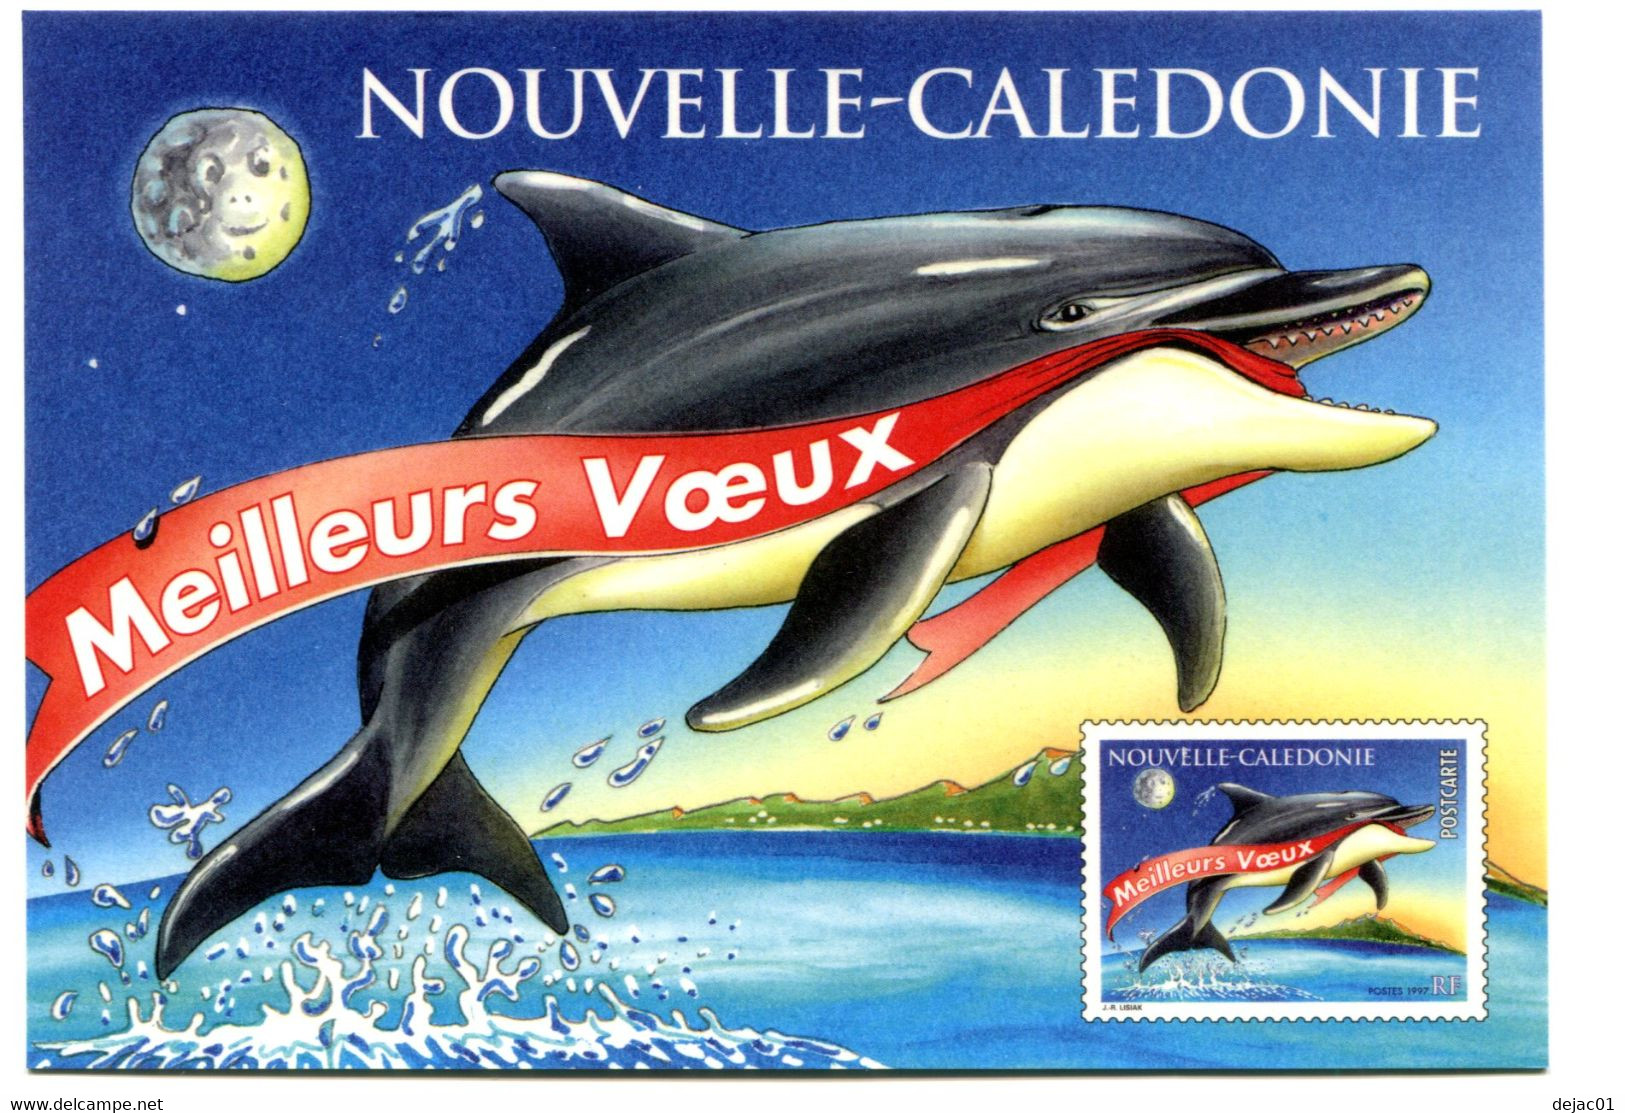 Nouvelle Calédonie - Carte Postale Yvert 14 CP Meilleurs Voeux - R 6213 - Interi Postali